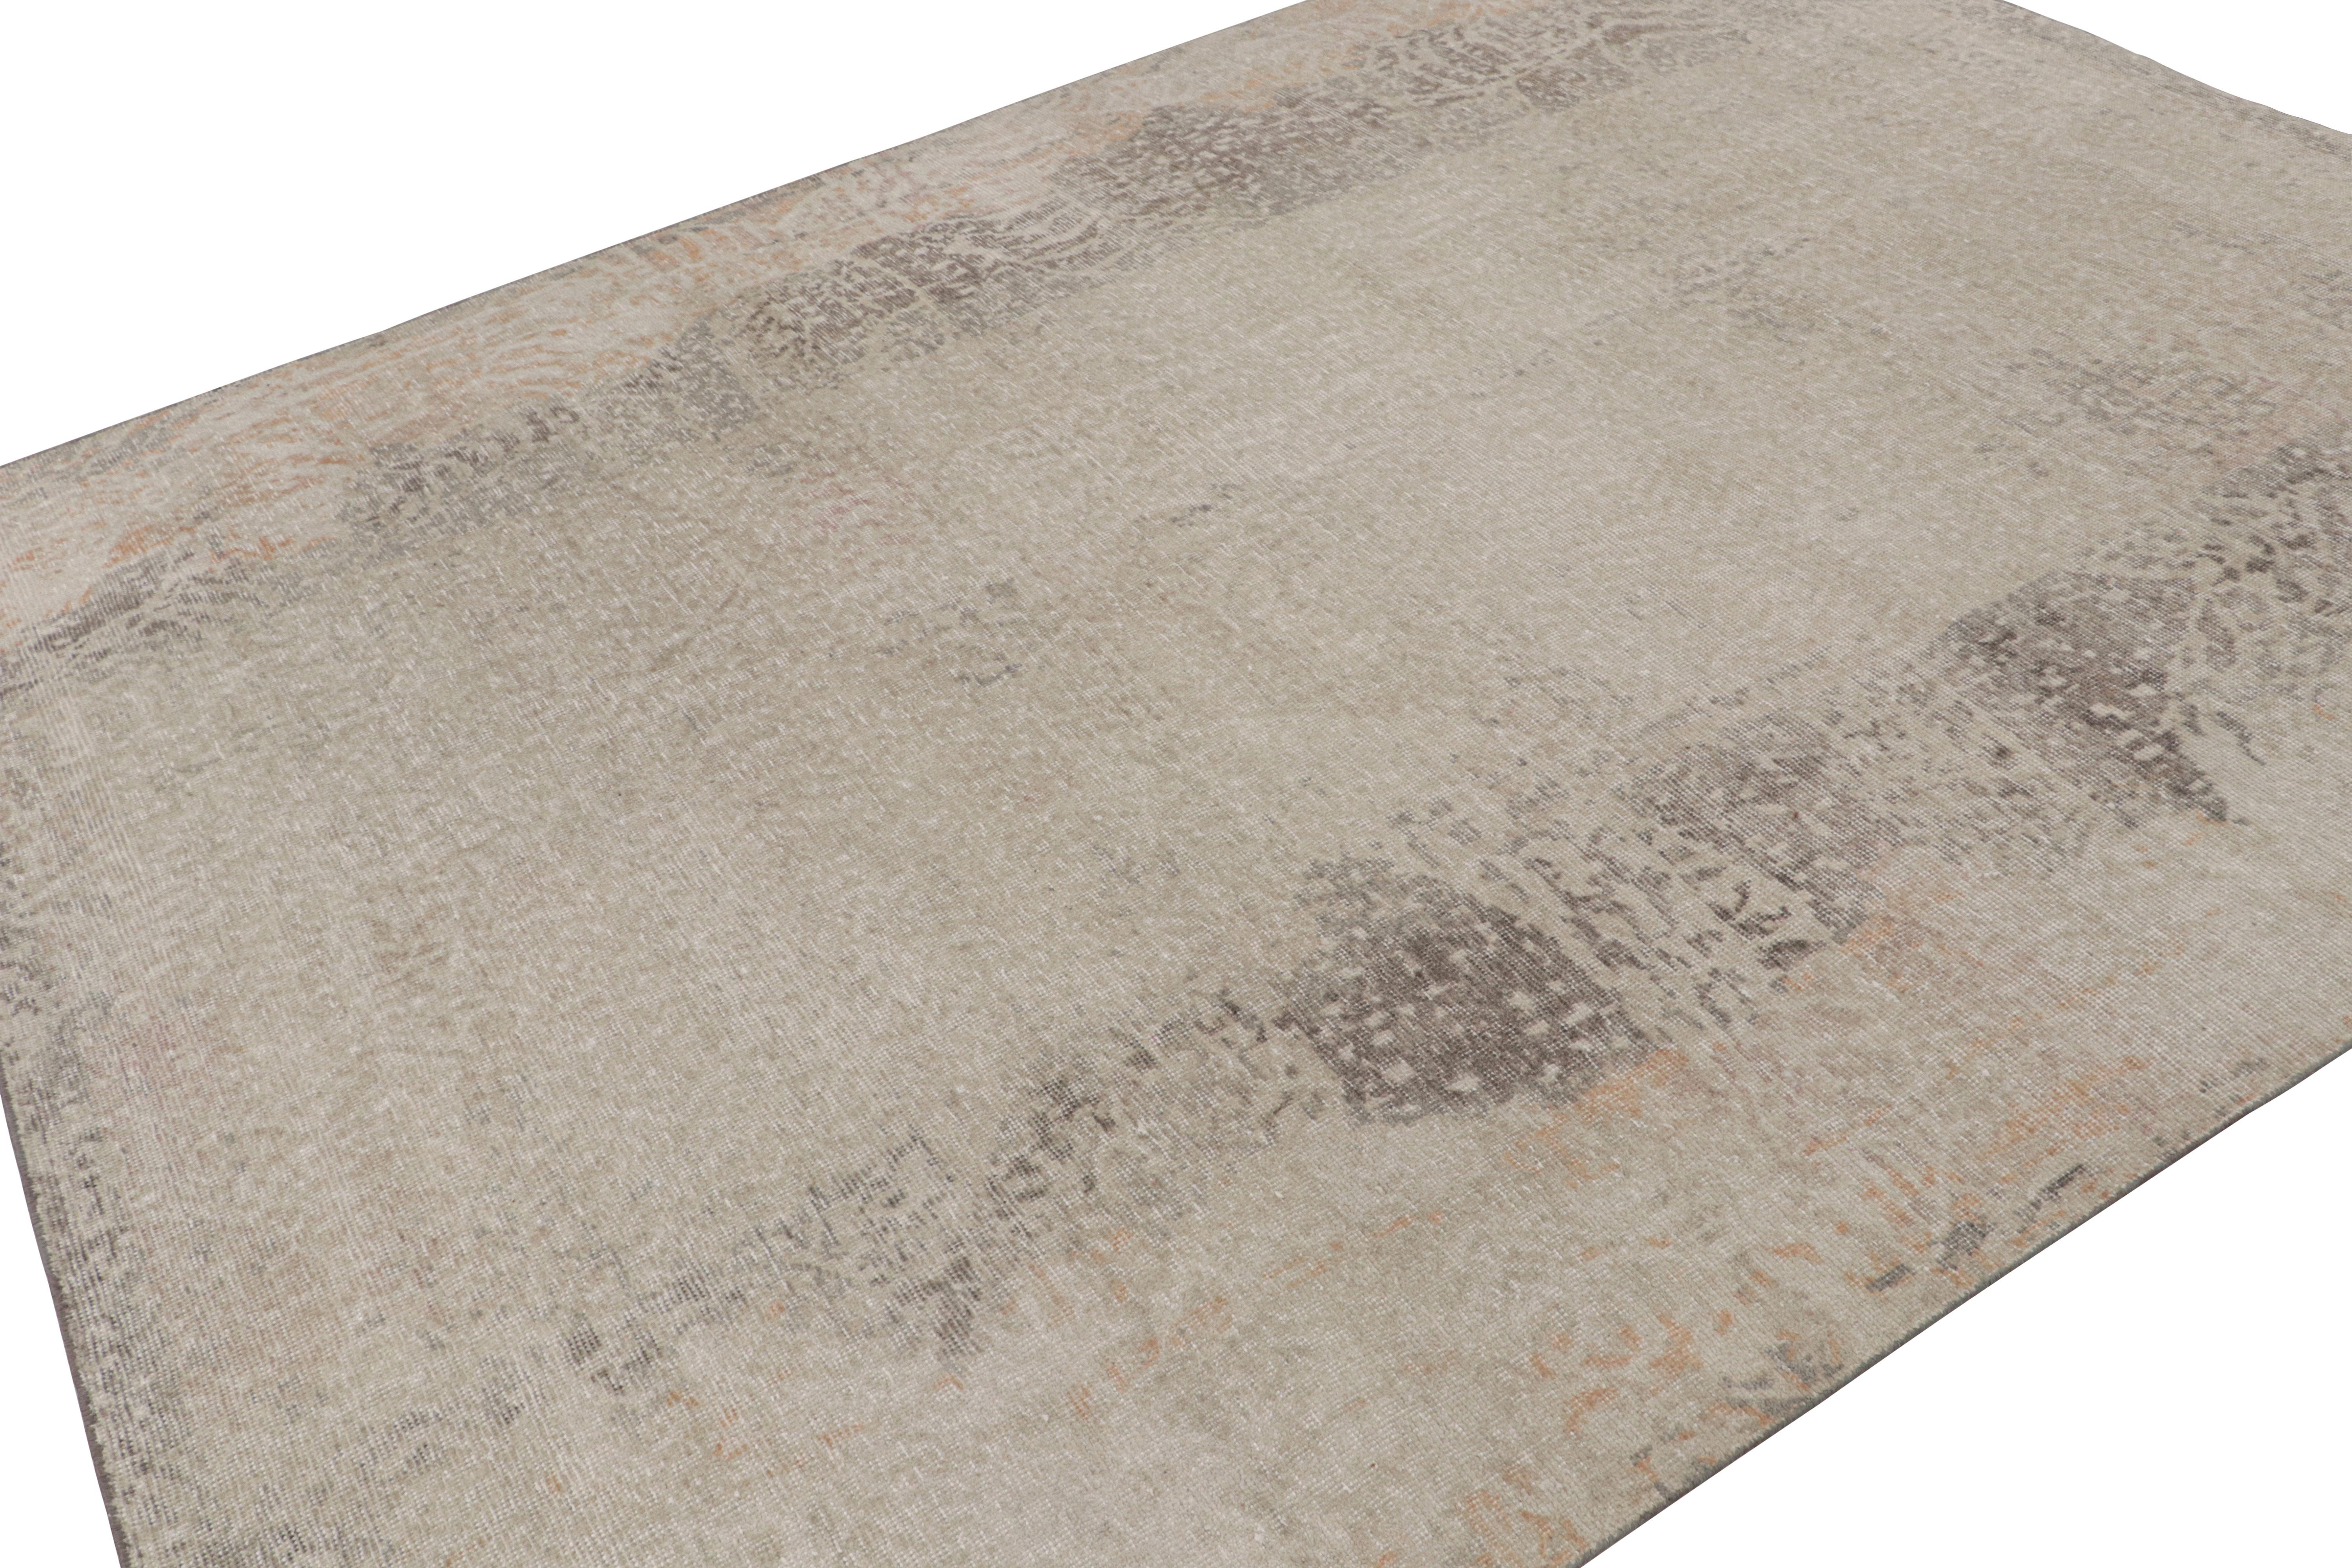 Ce tapis abstrait contemporain 8x9 est issu de la collection Homage de Rug & Kilim. Noué à la main en laine.

Sur le Design :

Cette pièce minimaliste s'inspire d'une abstraction d'imprimés animaliers. Les yeux attentifs remarqueront les tons taupe